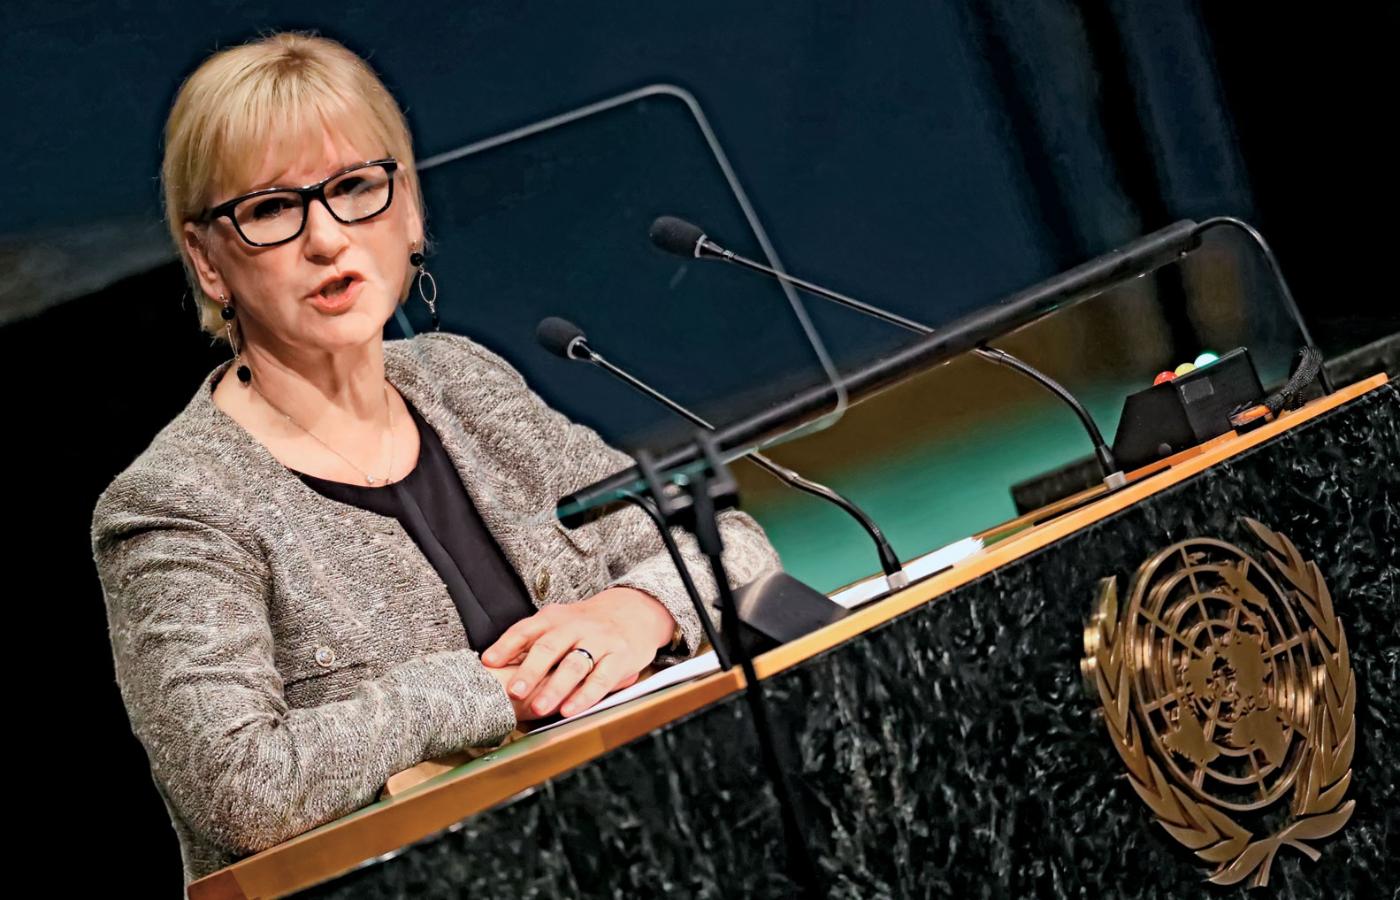 Margot Wallström, minister spraw zagranicznych Szwecji. Uznała za swój główny cel walkę o równe szanse i prawa dla kobiet.